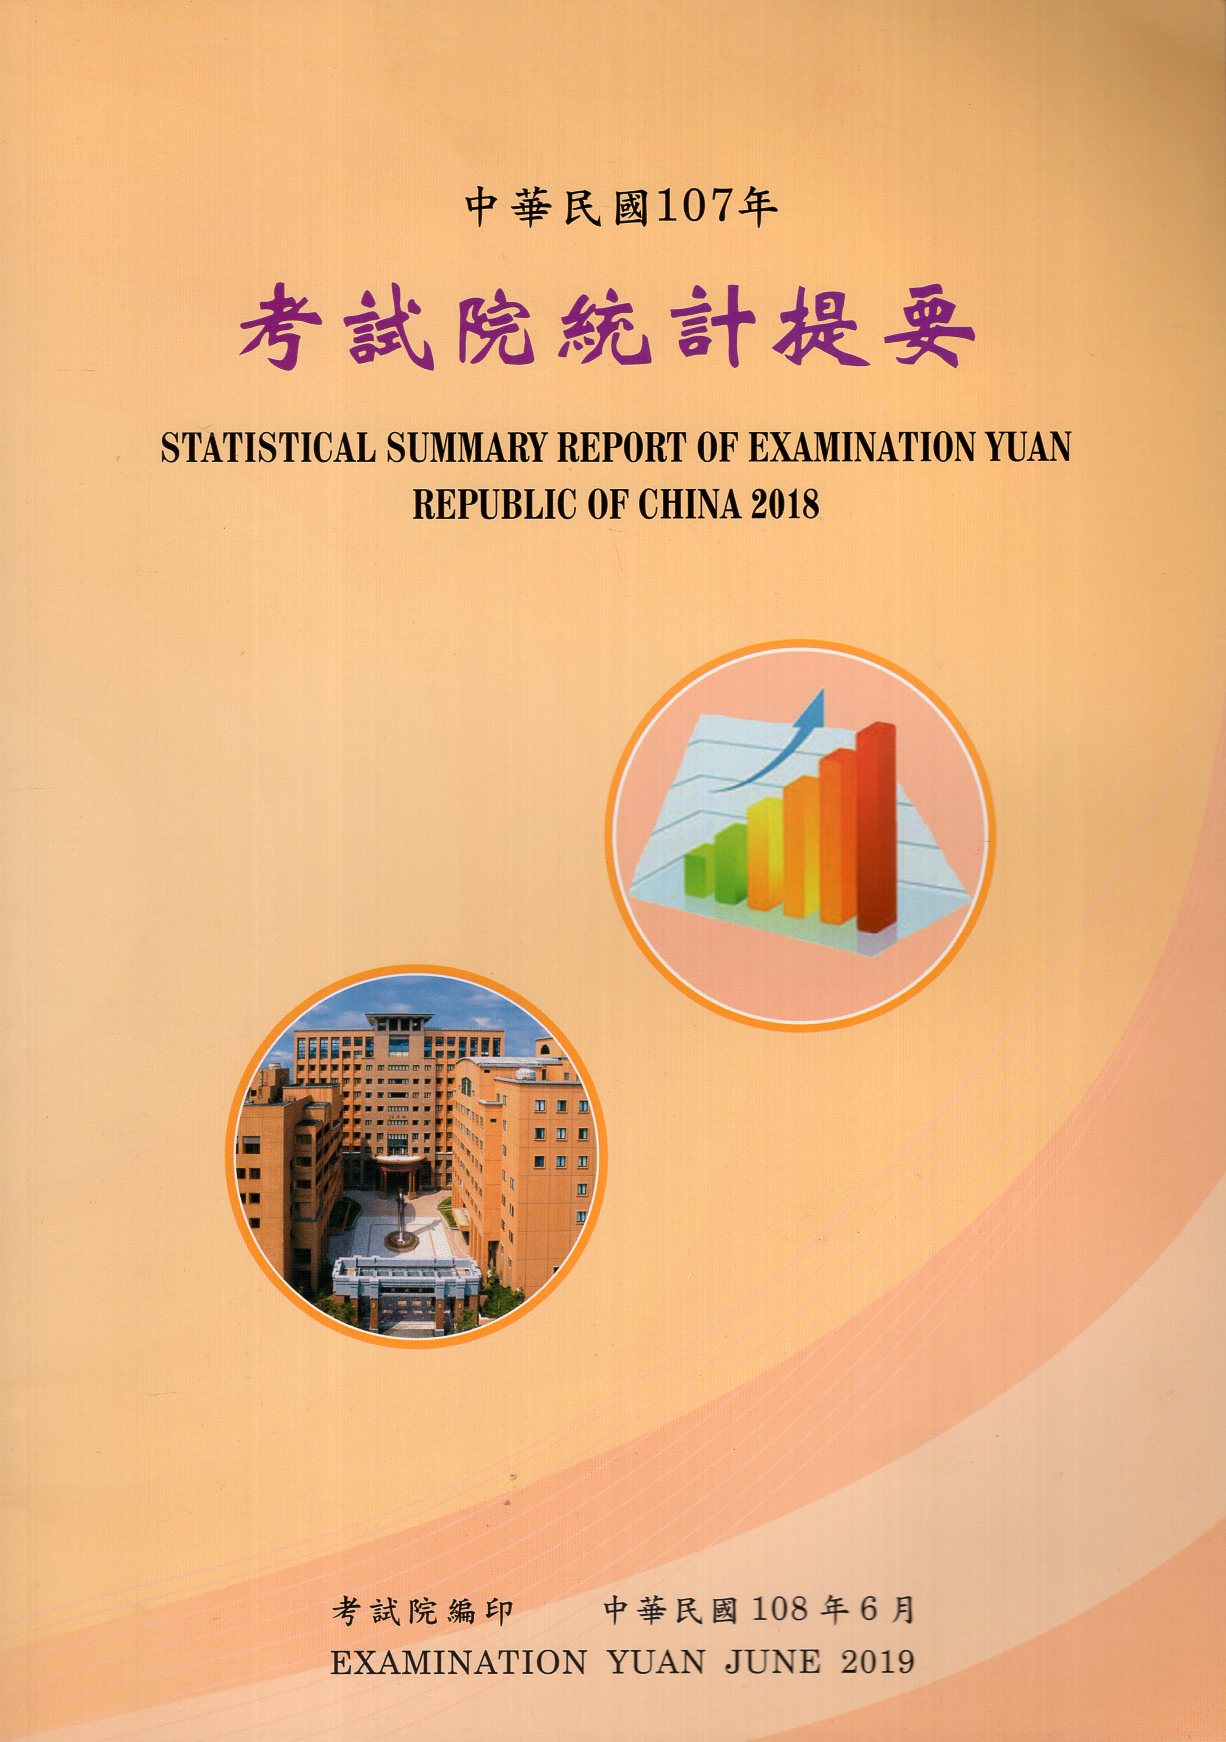 中華民國107年考試院統計提要 